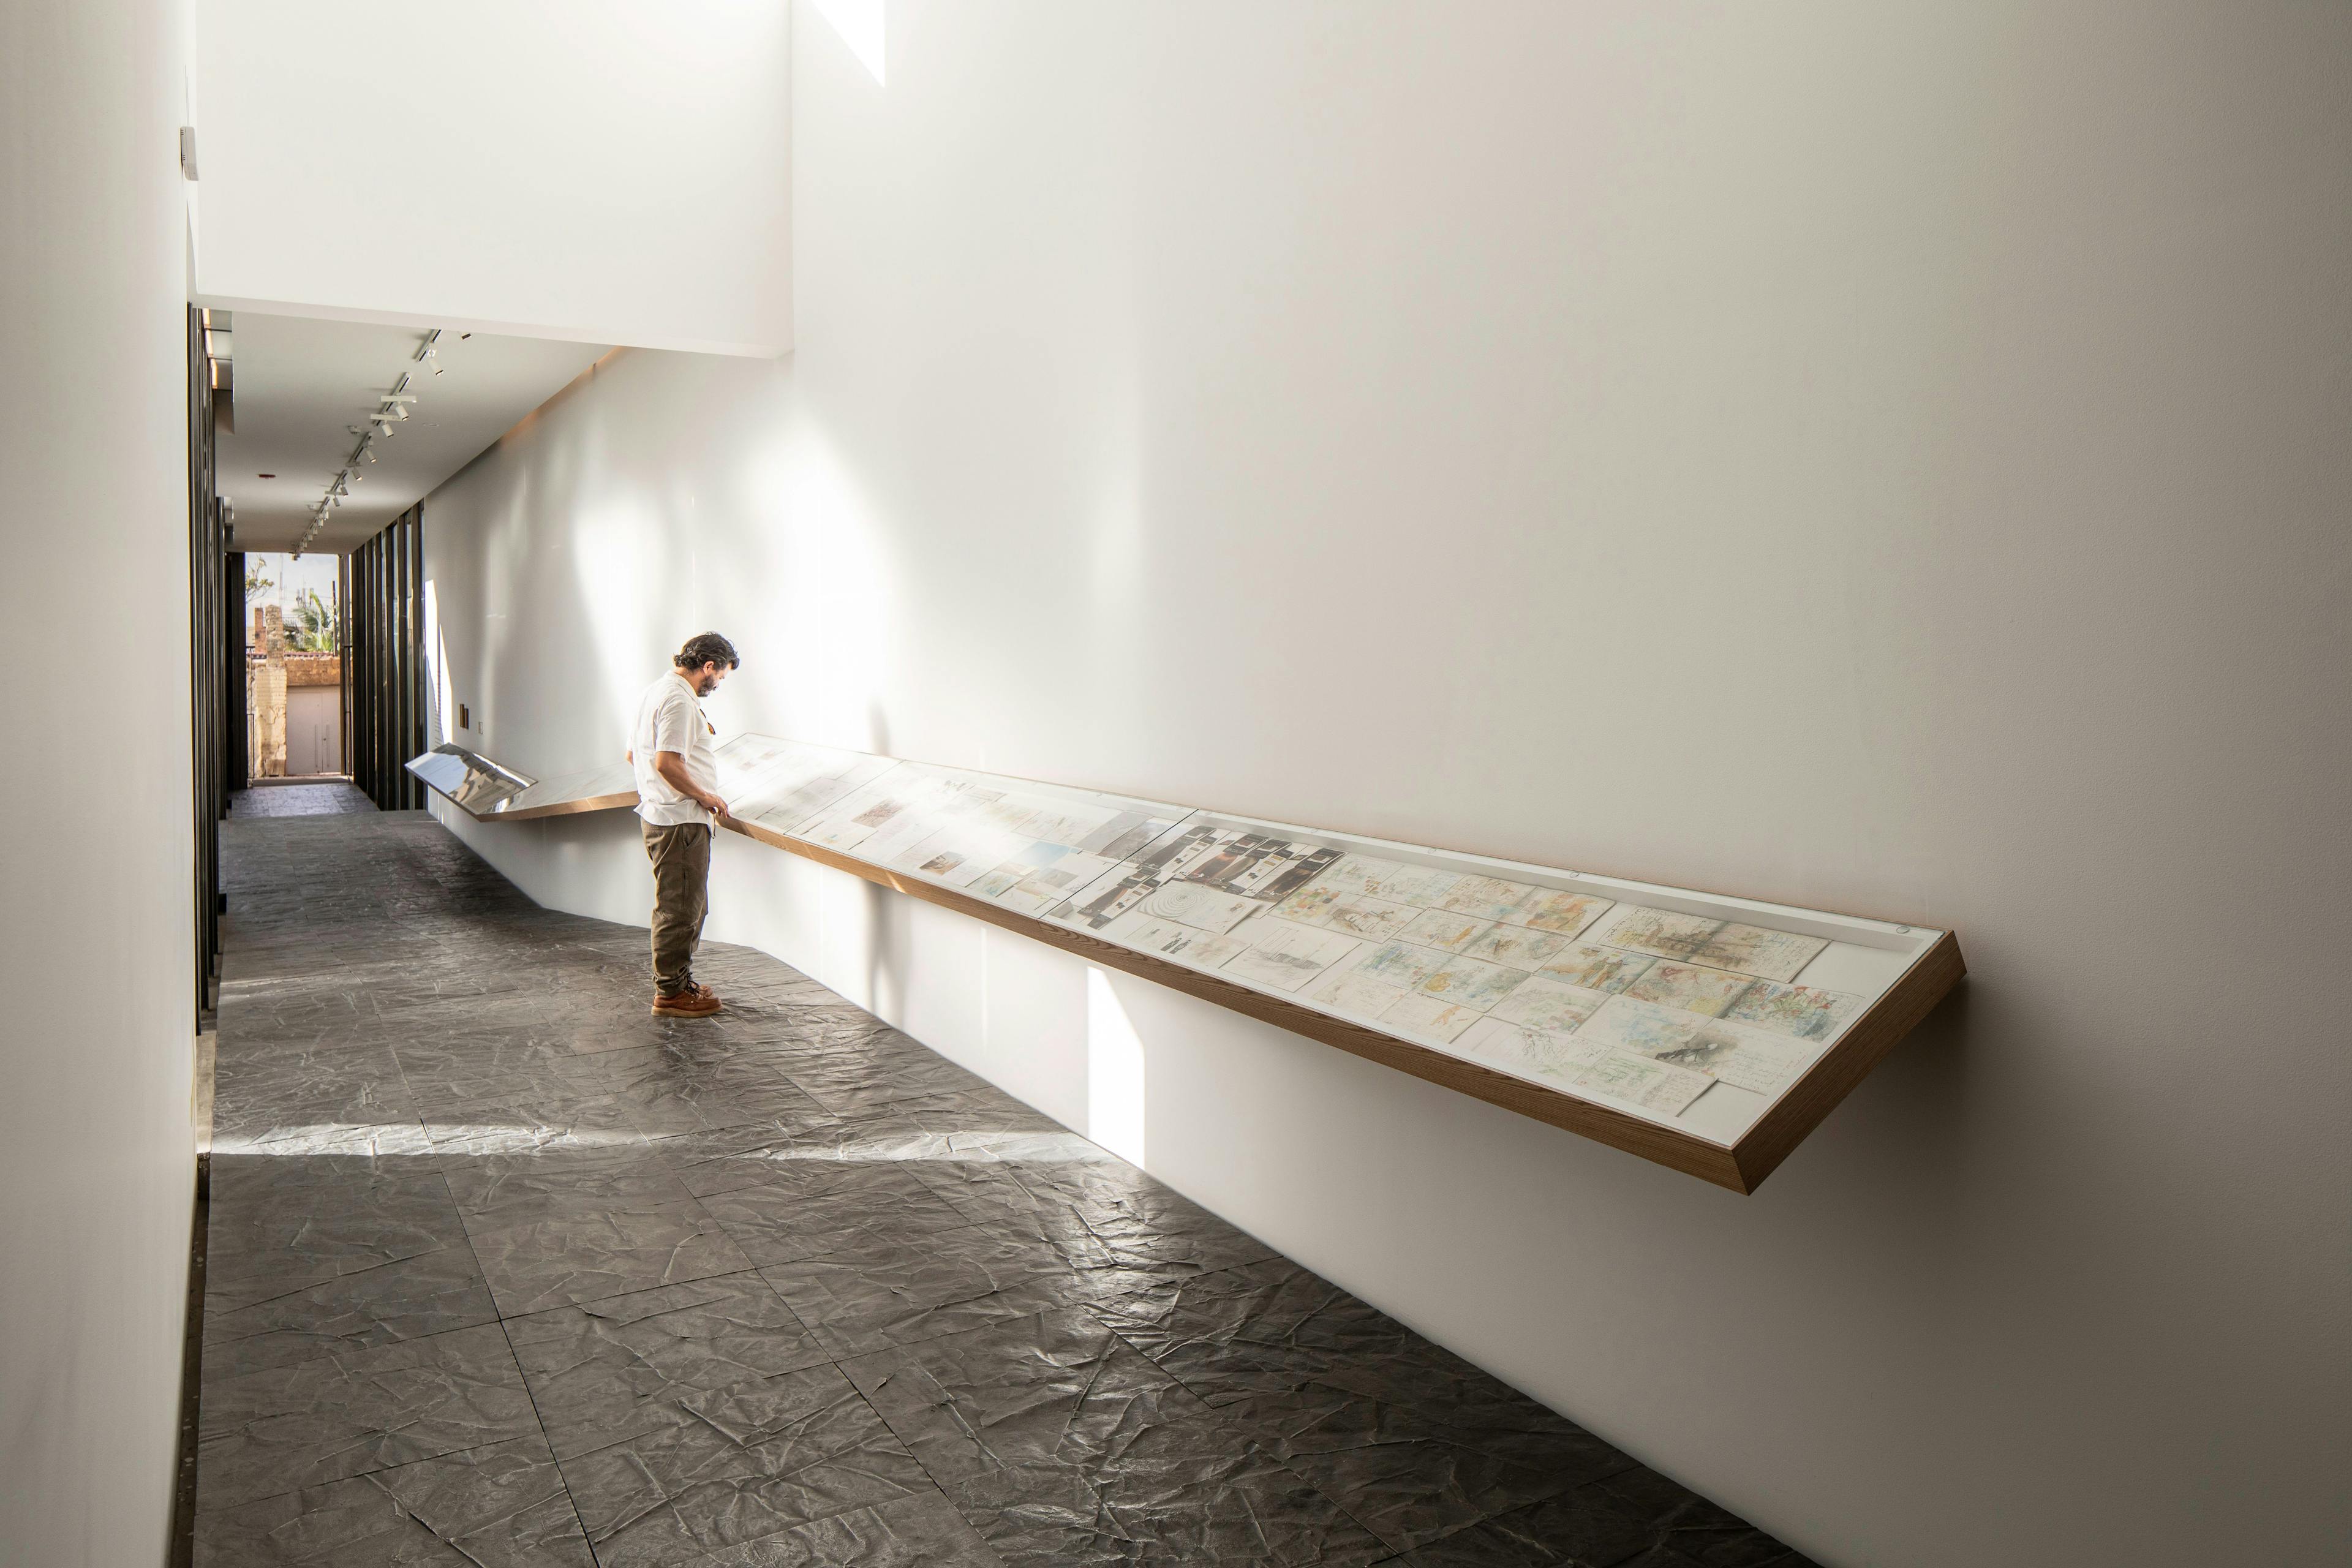 Installation view of the exhibition, Salam Tristesse: Irak, 2016–2020, at Fragmentos, Espacio de Arte y Memoria, Museo Nacional de Colombia in Bogotá, dated 2021.